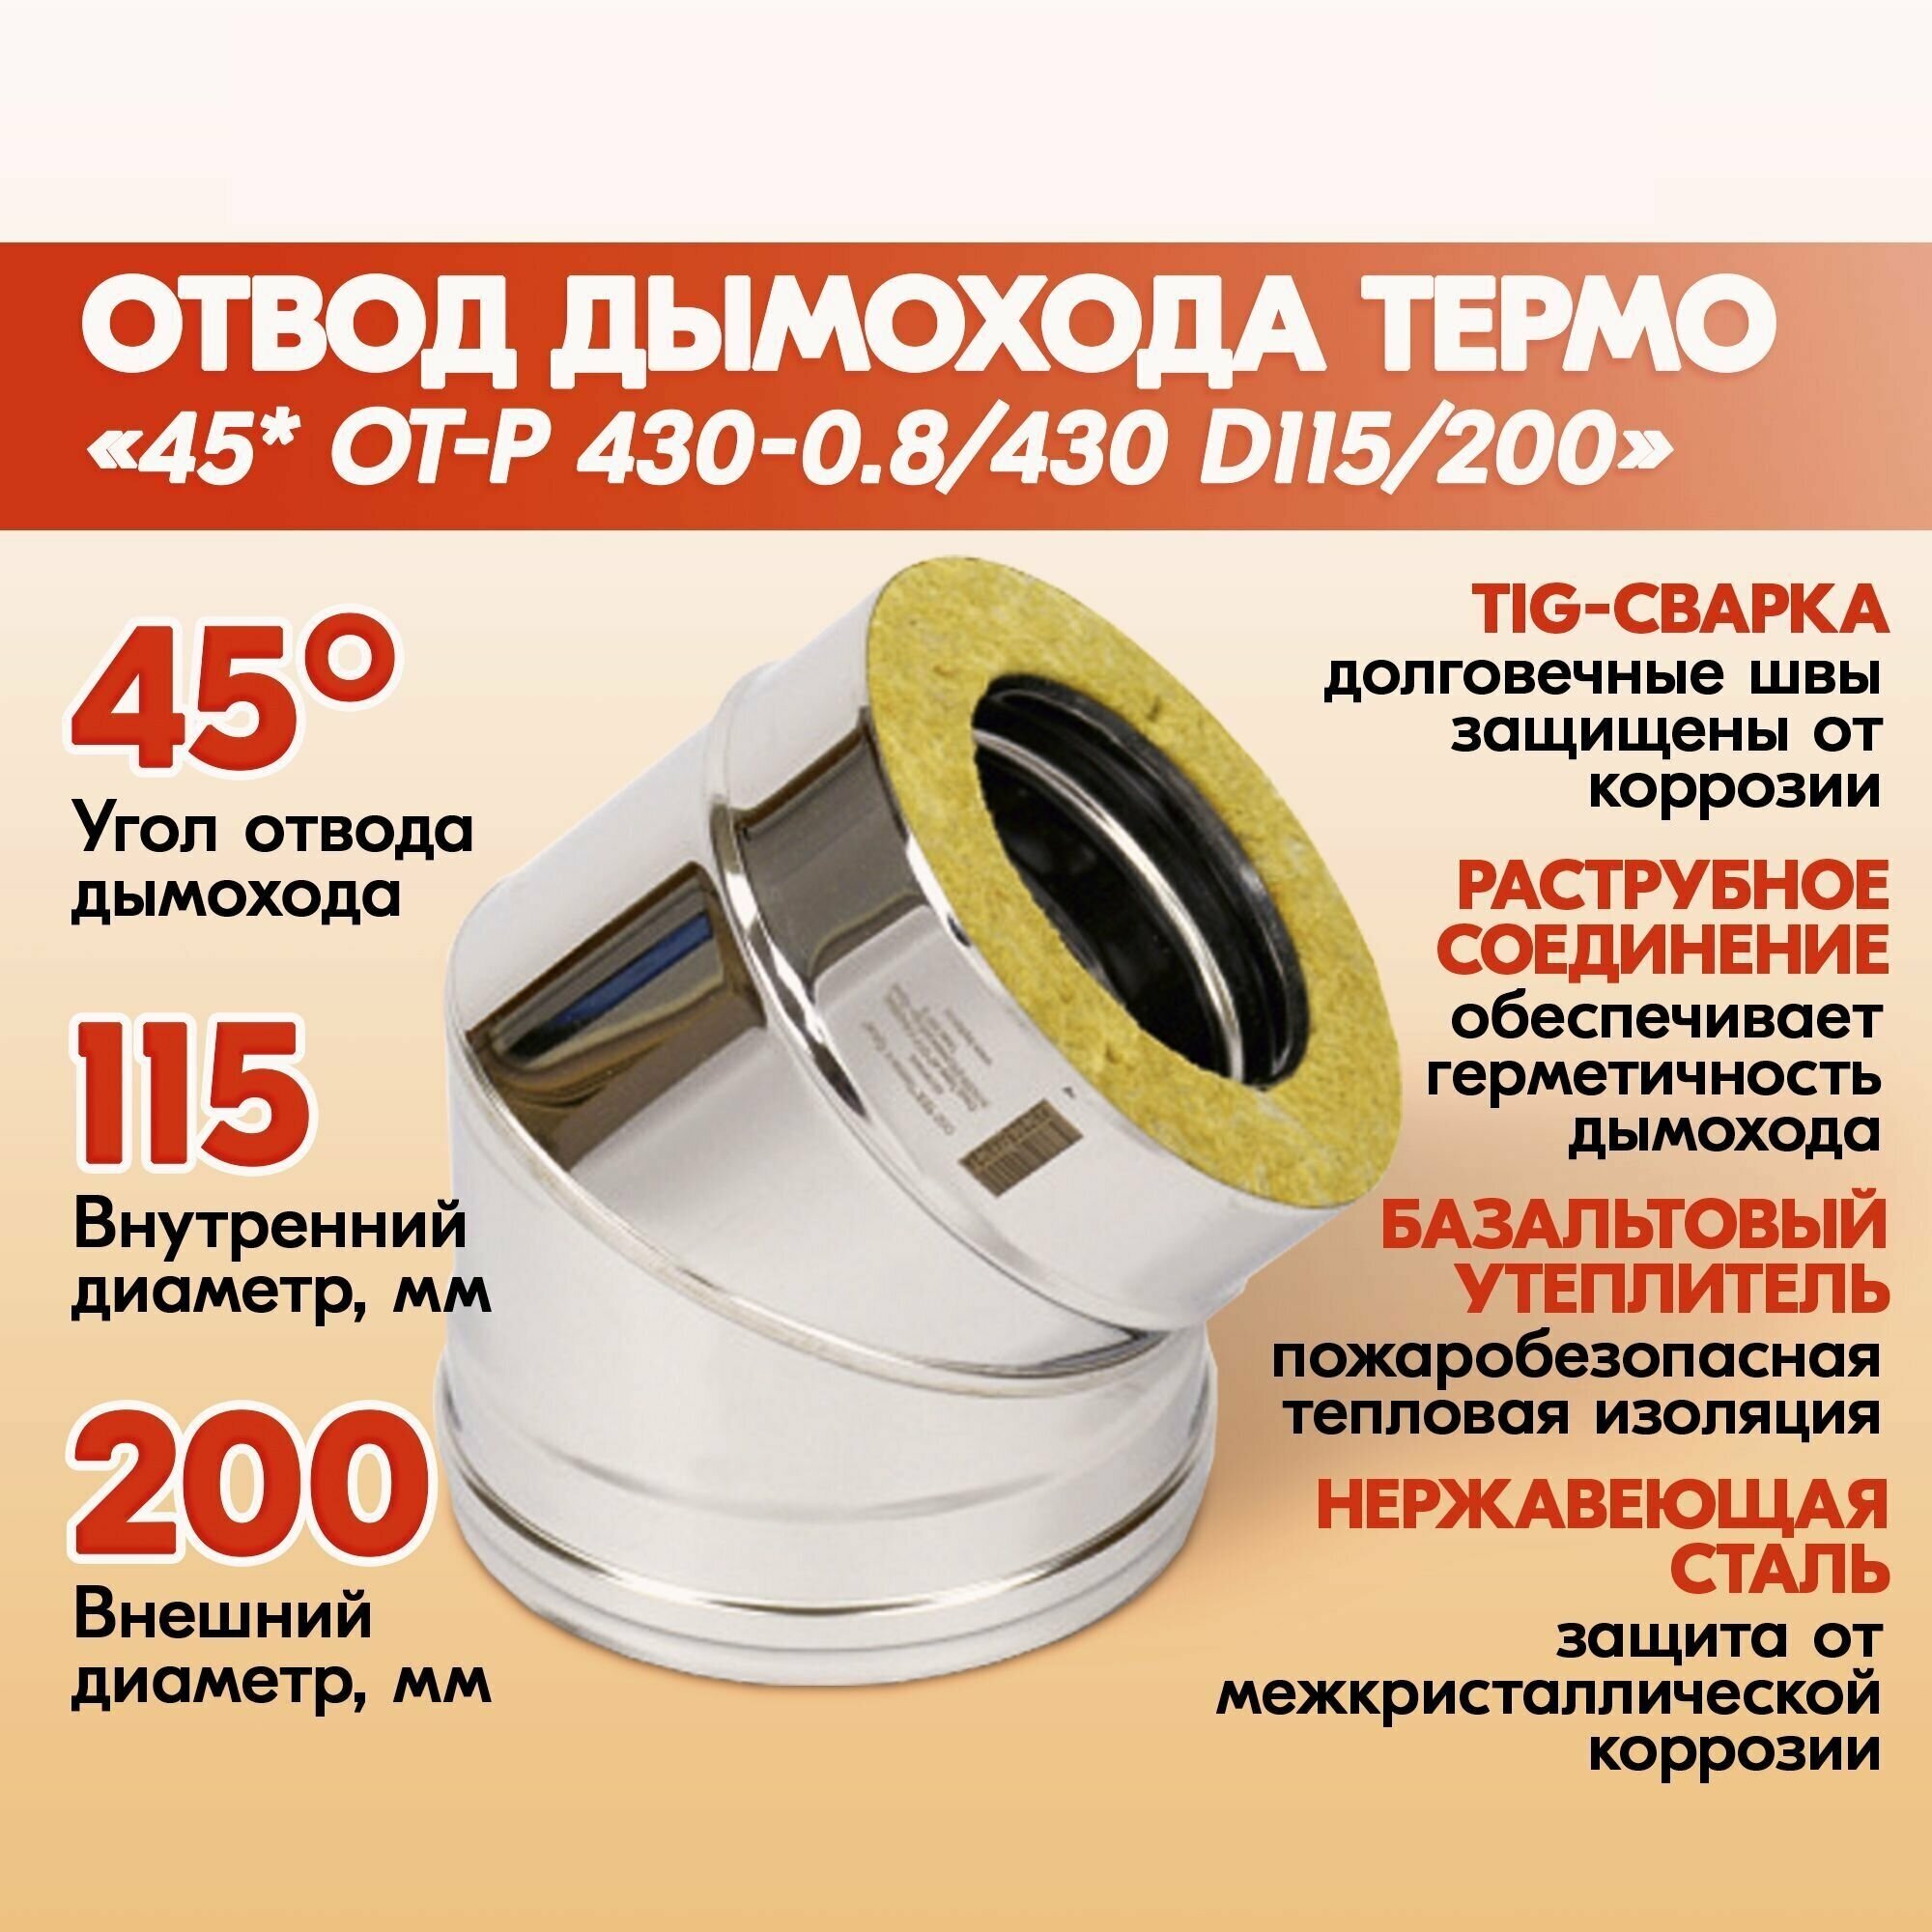 Отвод дымохода Термо 45* ОТ-Р 430-0.8/430 D115/200